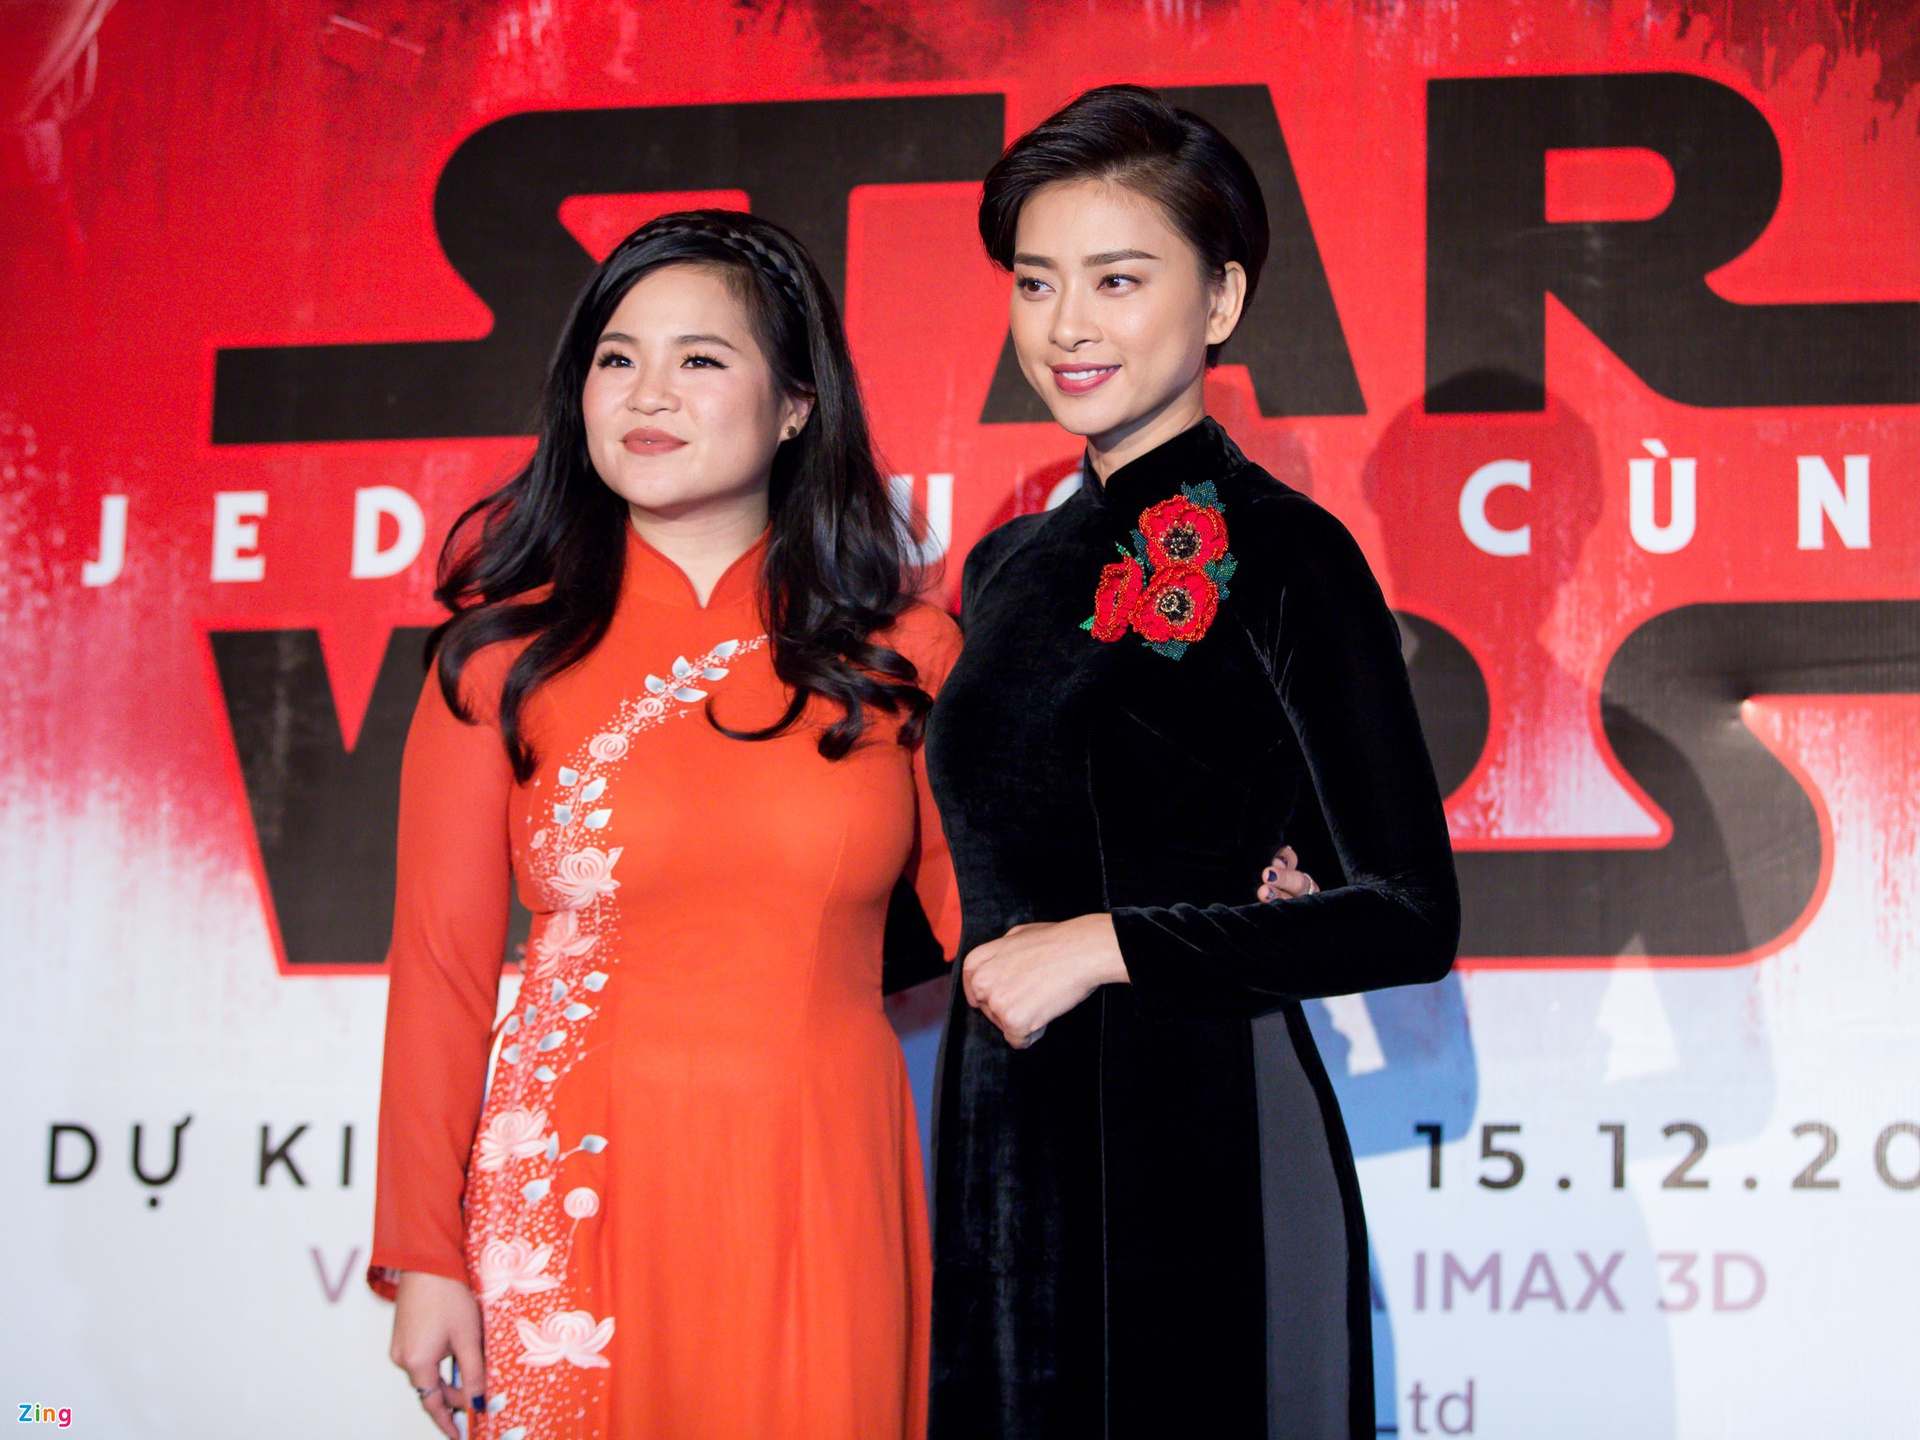 Kelly và Ngô Thanh Vân từng hợp tác với nhau trong 'Star Wars'